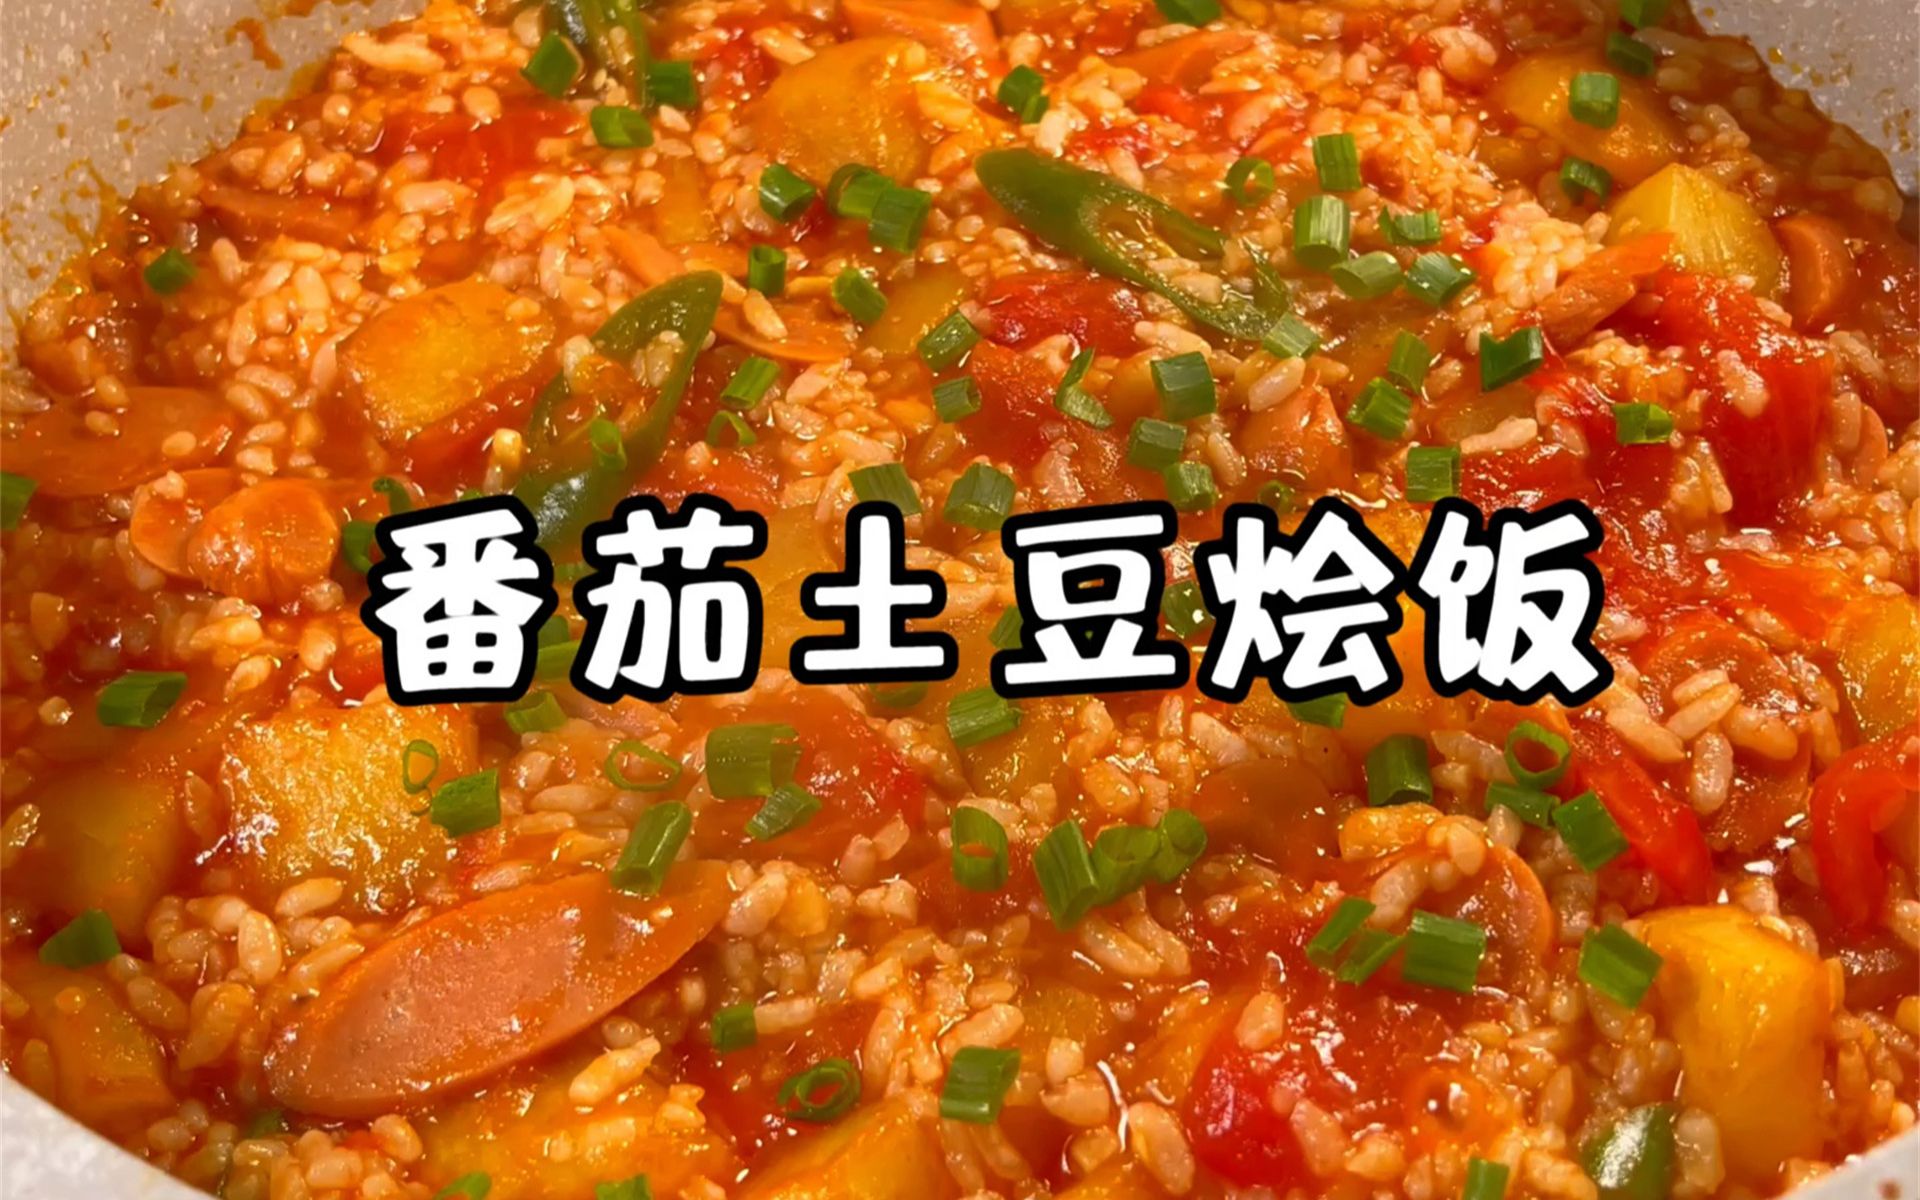 剩米饭的神仙吃法🍚番茄土豆烩饭‼️香迷糊了